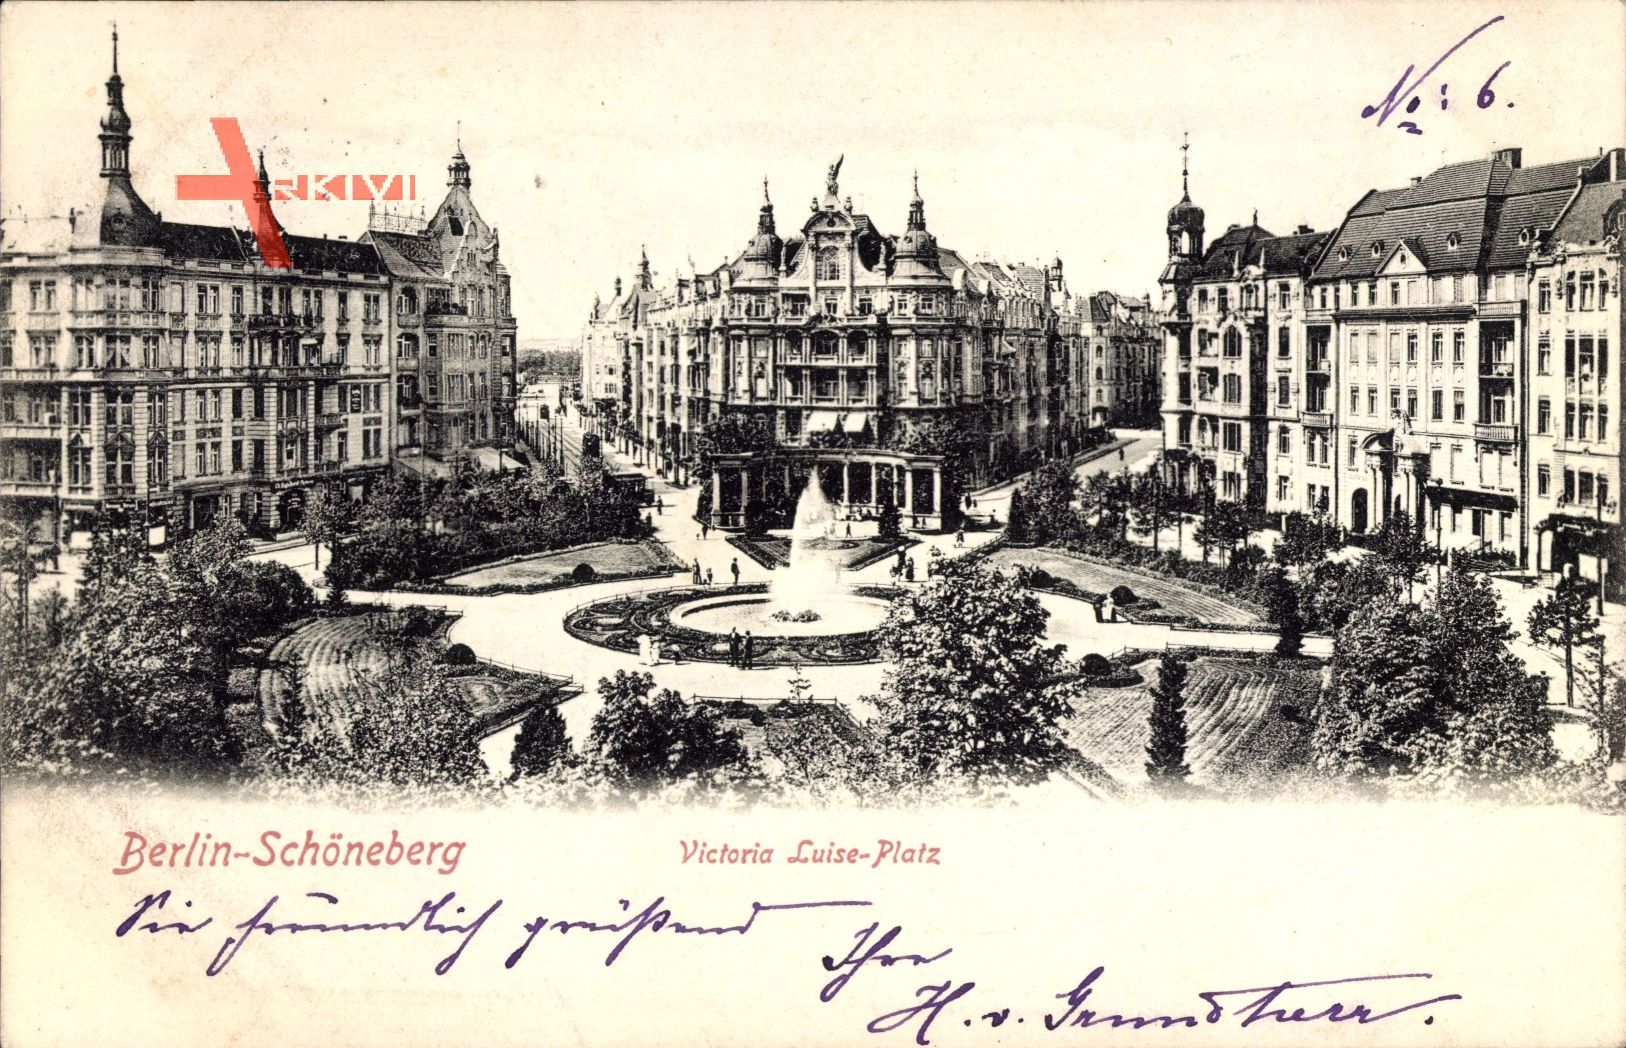 Berlin Schöneberg, Blick auf den Viktoria Luise Platz, Springbrunnen, Häuser